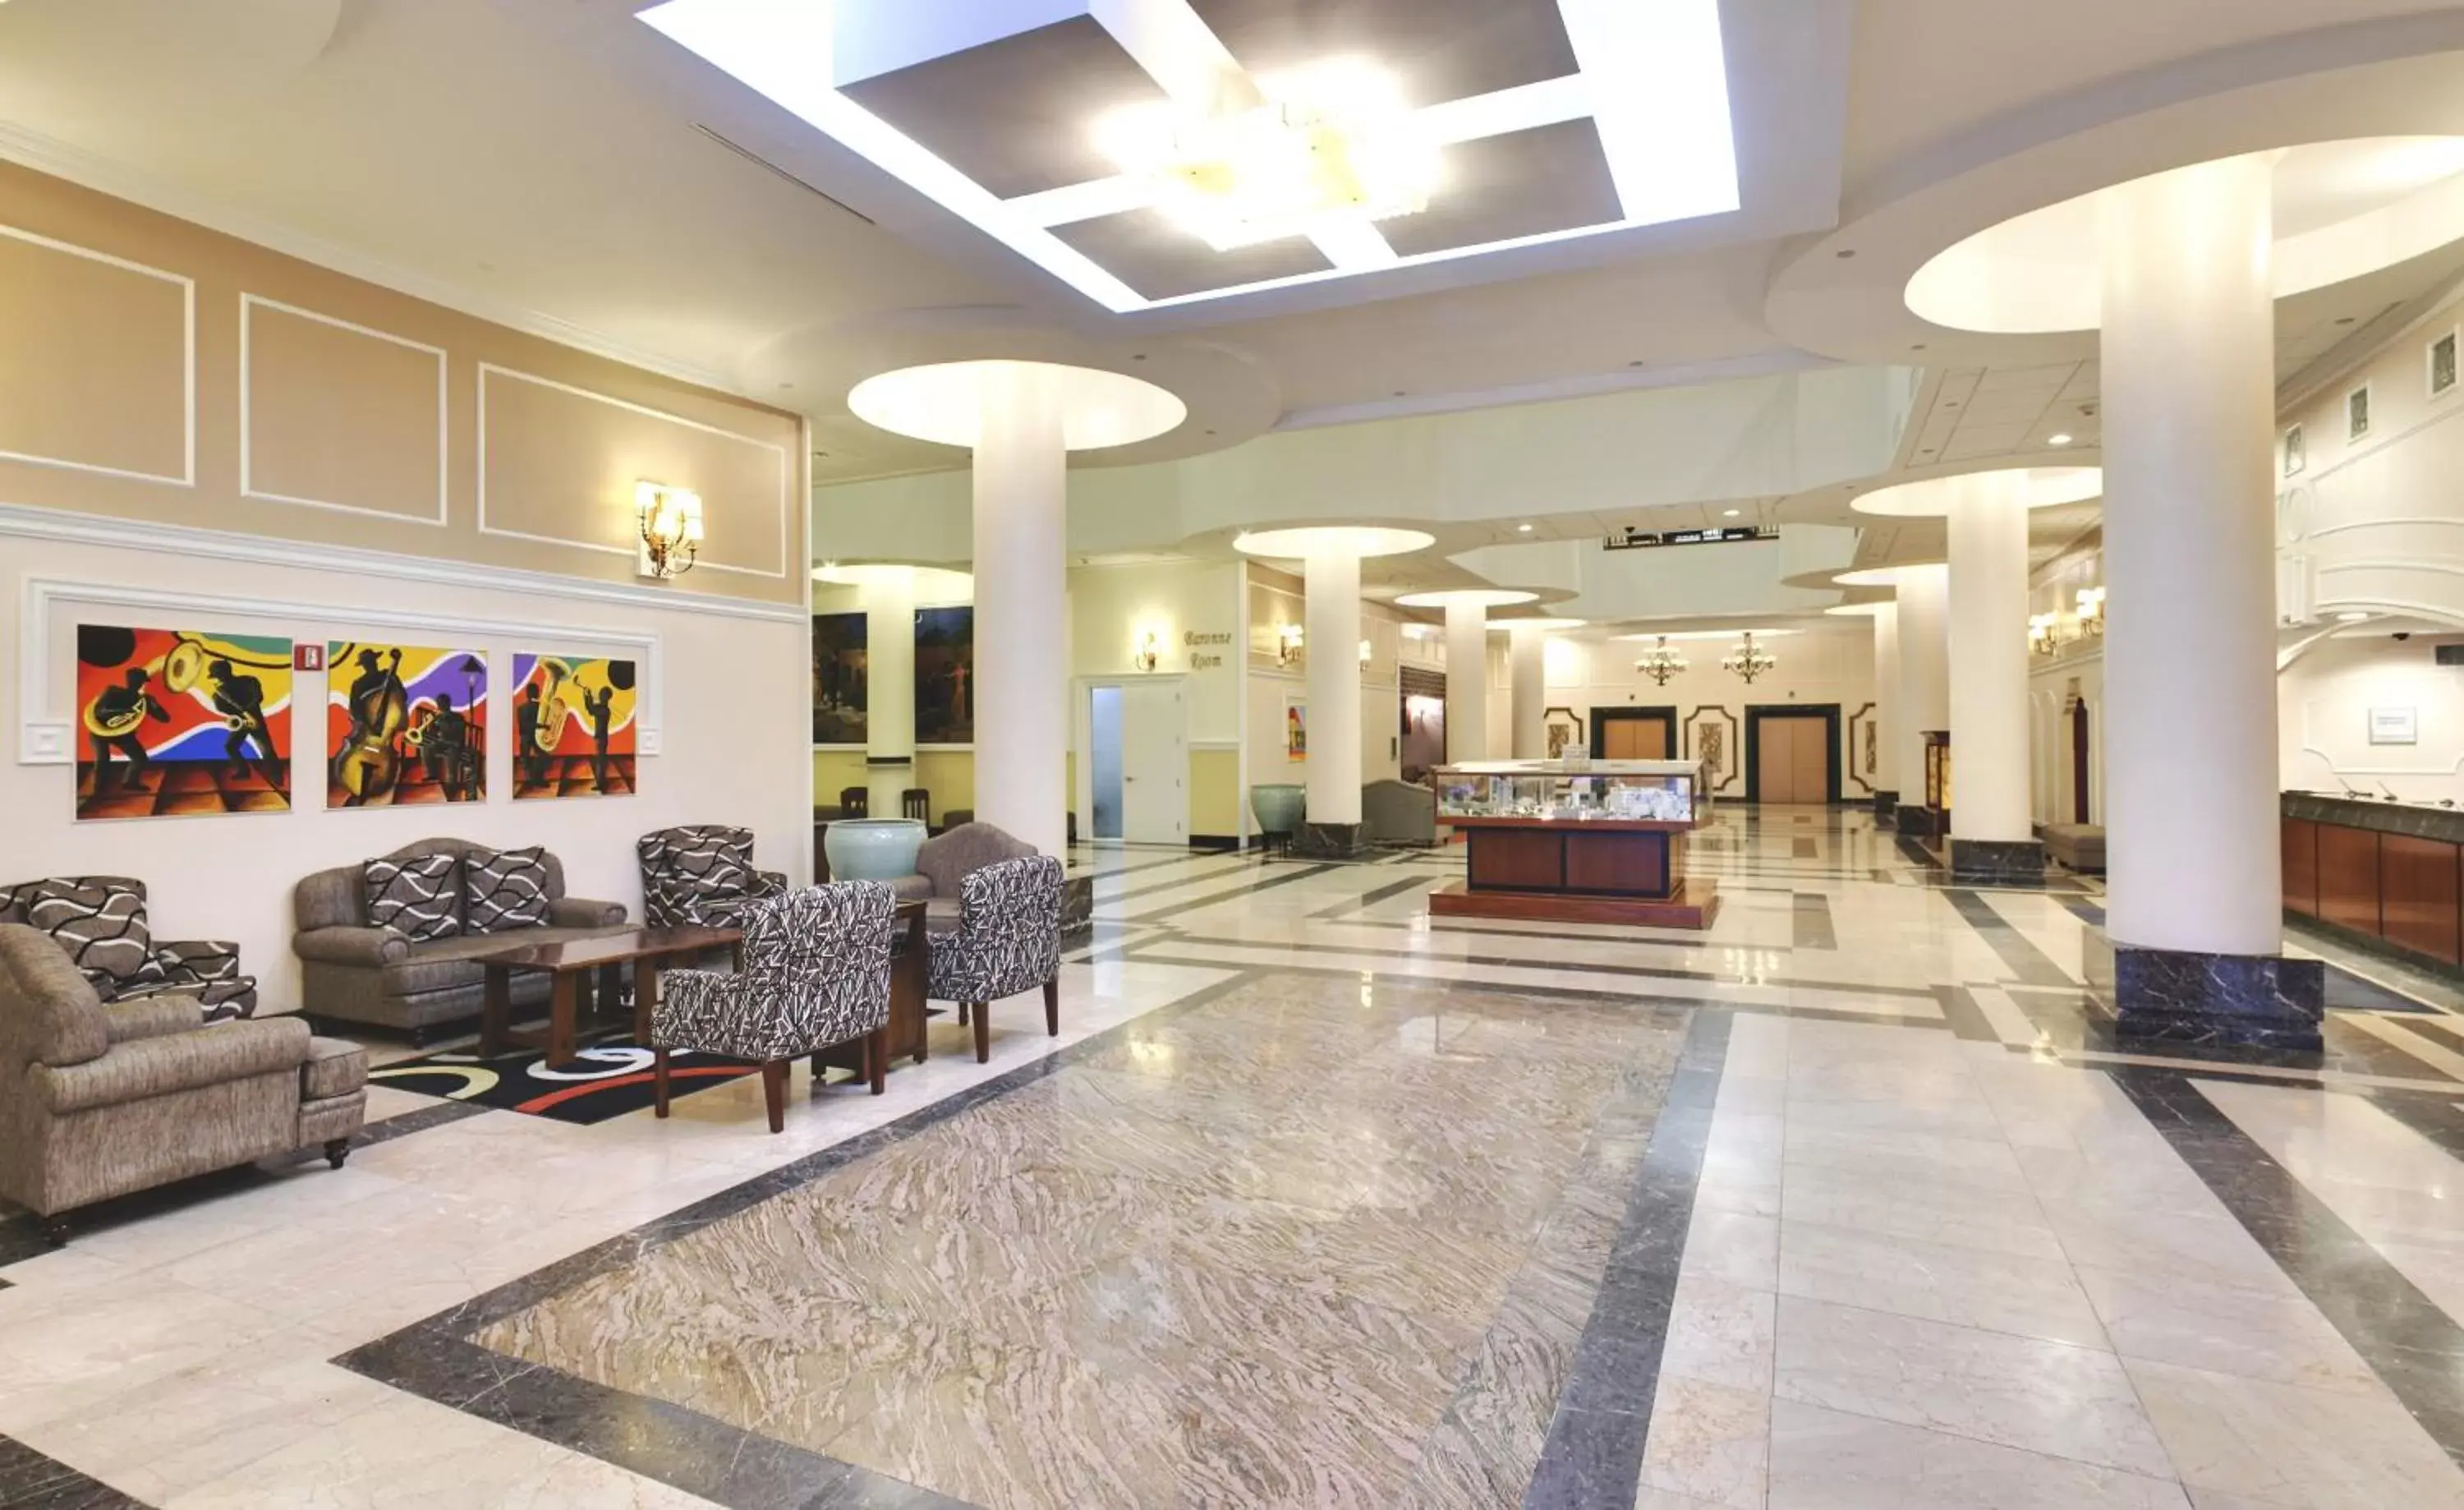 Lobby or reception, Lobby/Reception in Wyndham Garden Baronne Plaza